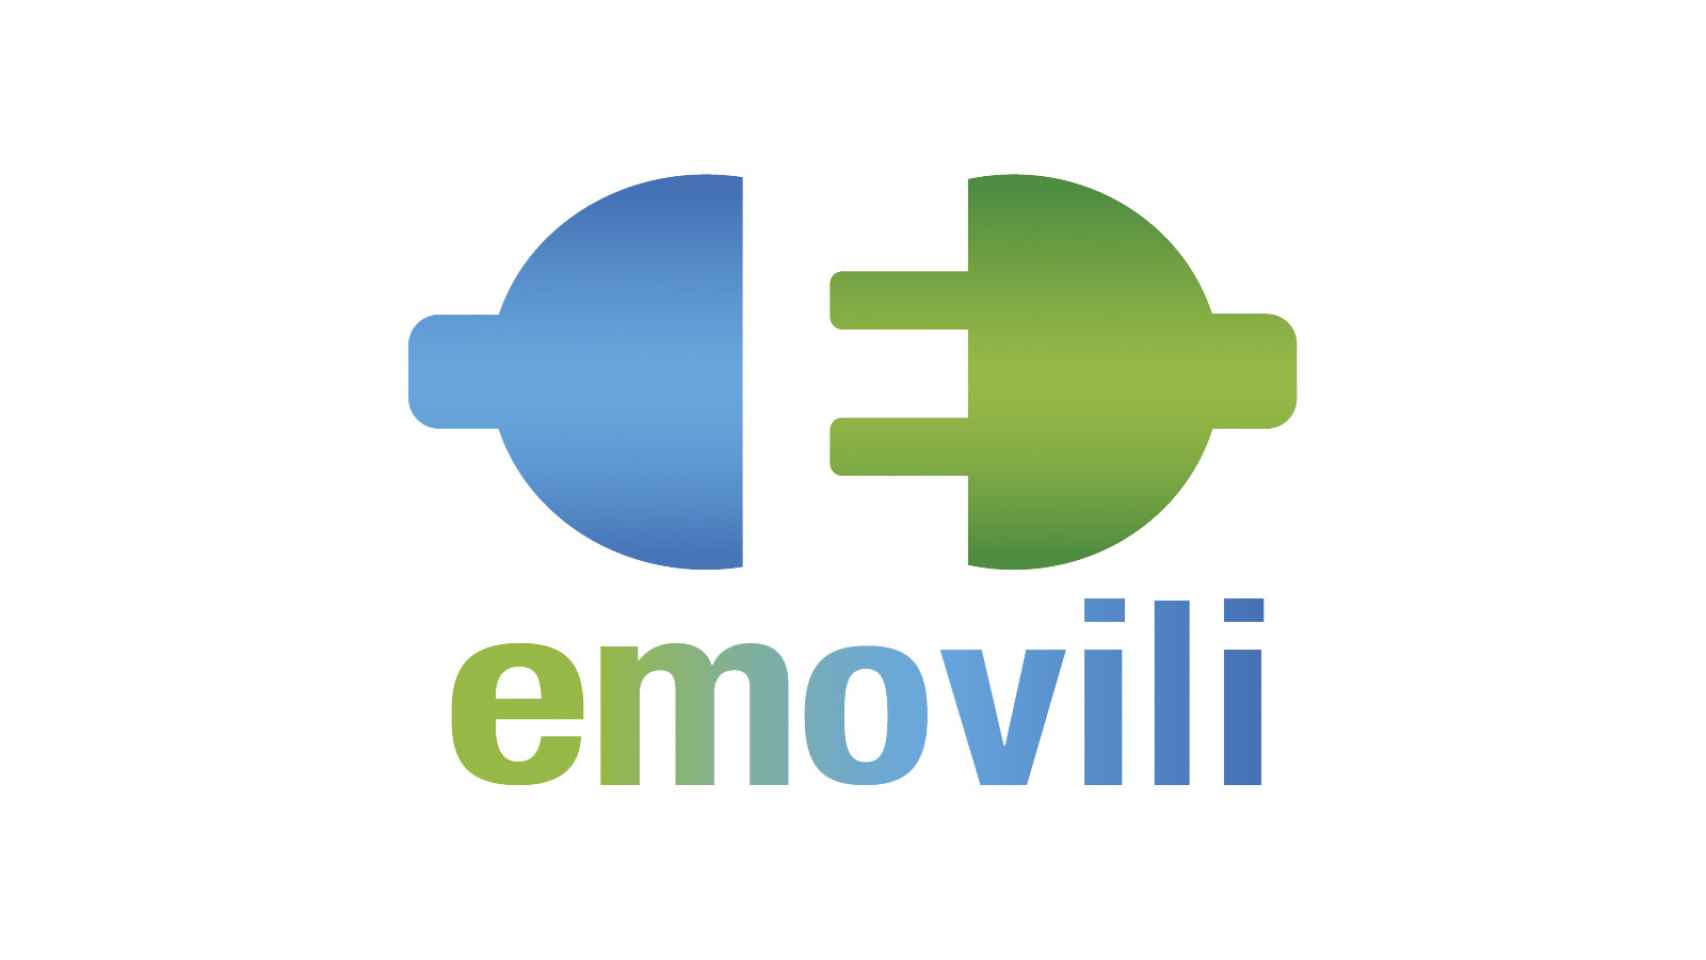 emovili nació en 2017 para asesorar al cliente hacia la energía verde y digital.